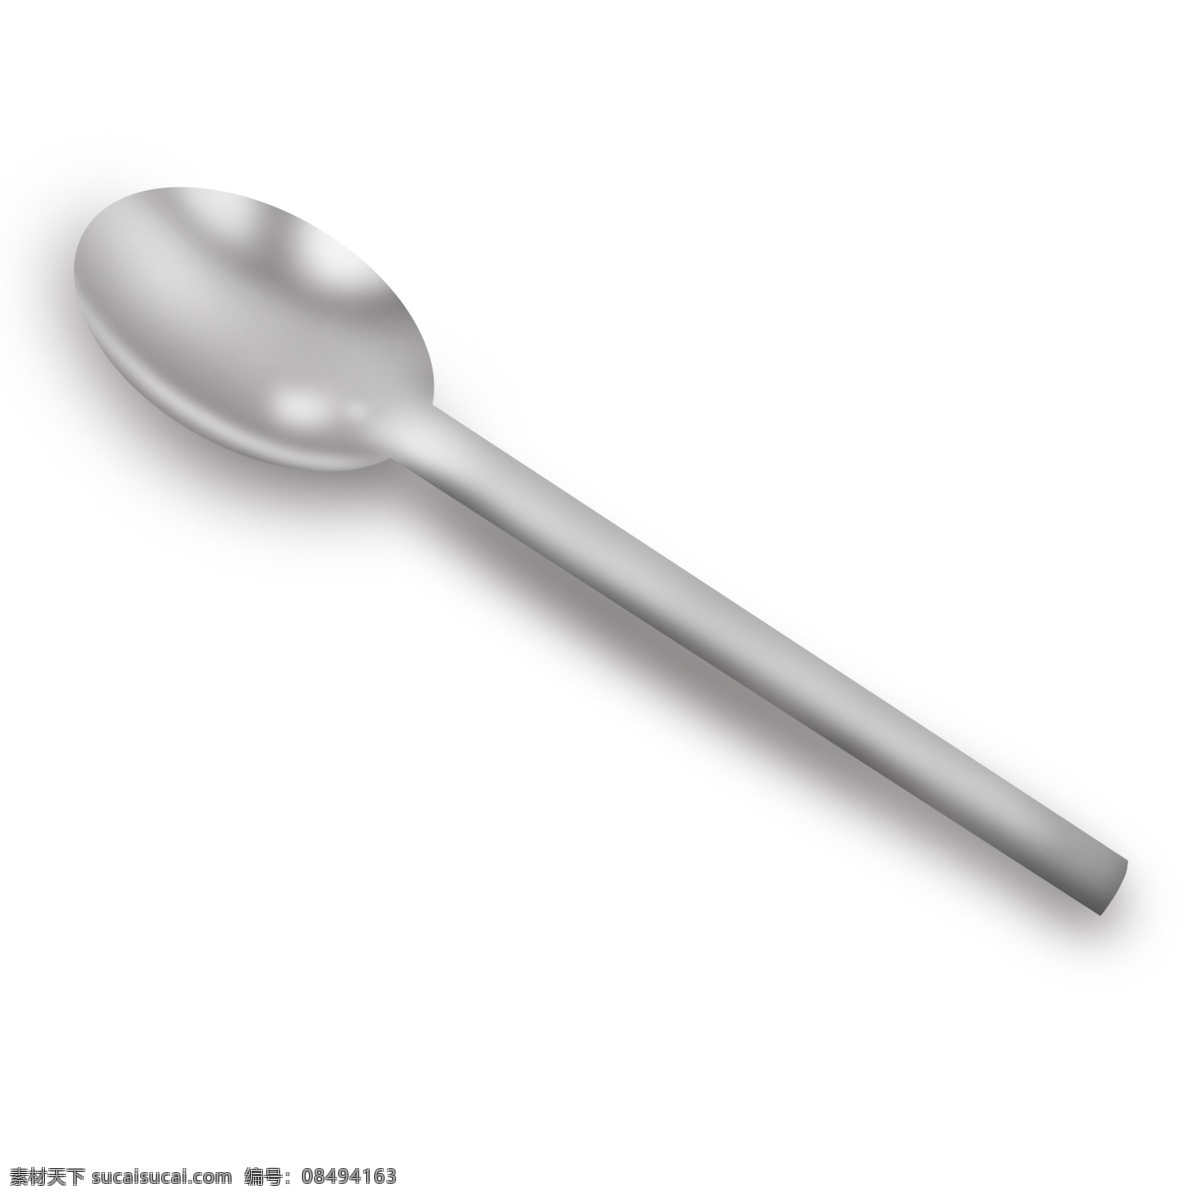 浅色 金属 银白色 勺子 汤勺 调羹 甜品勺 餐具 卡通 反光 高光 立体 产品 物品 装饰 调味 灰白色 灰色